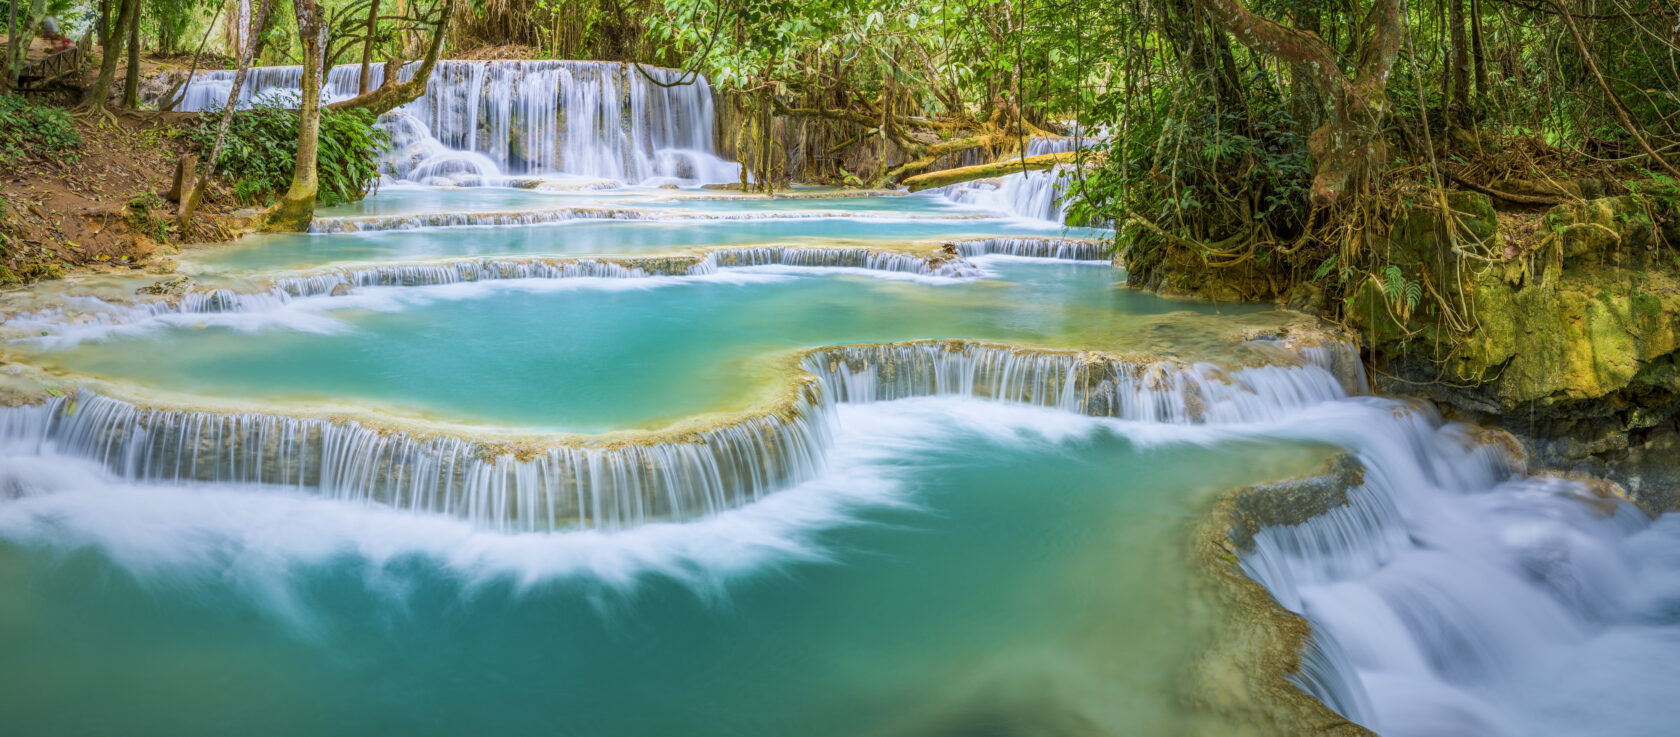 Beautiful blue green color of water at Kuang Si Falls.